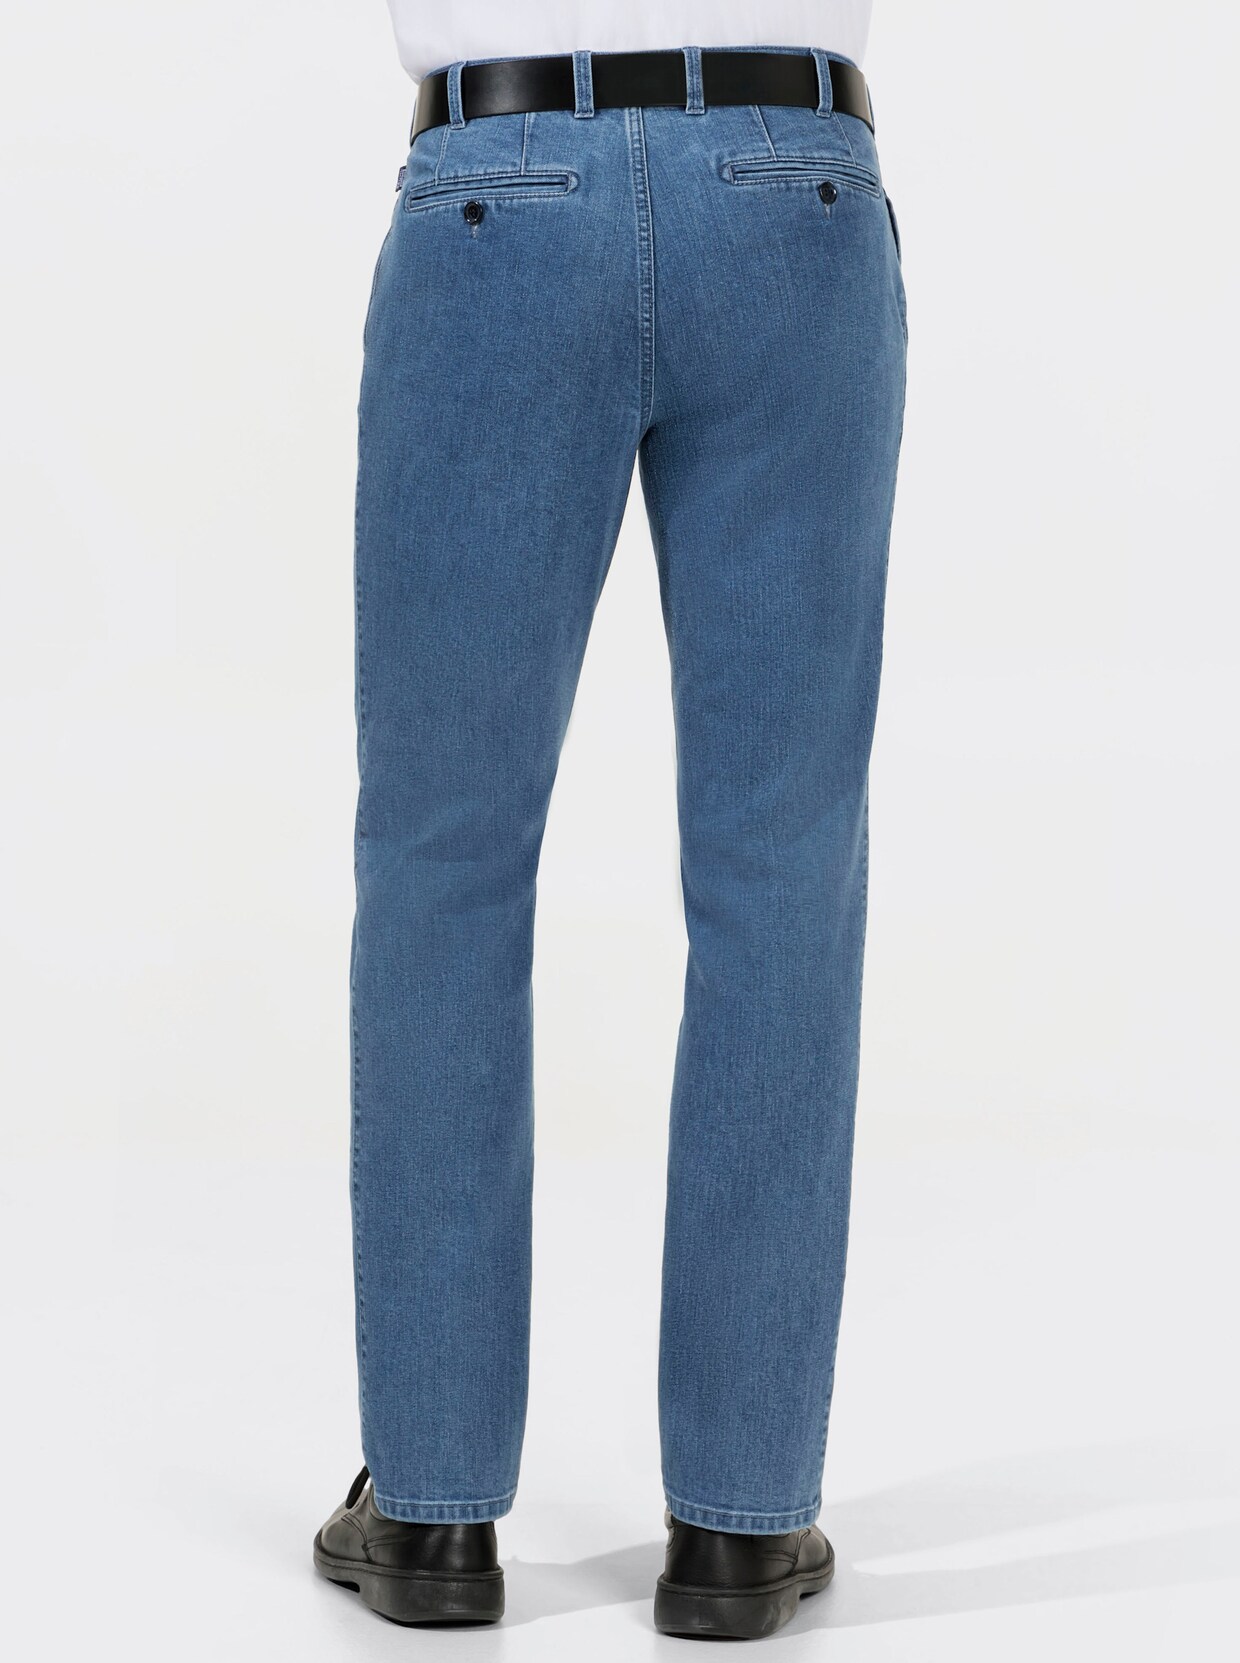 Brühl Jeans - blue-bleached